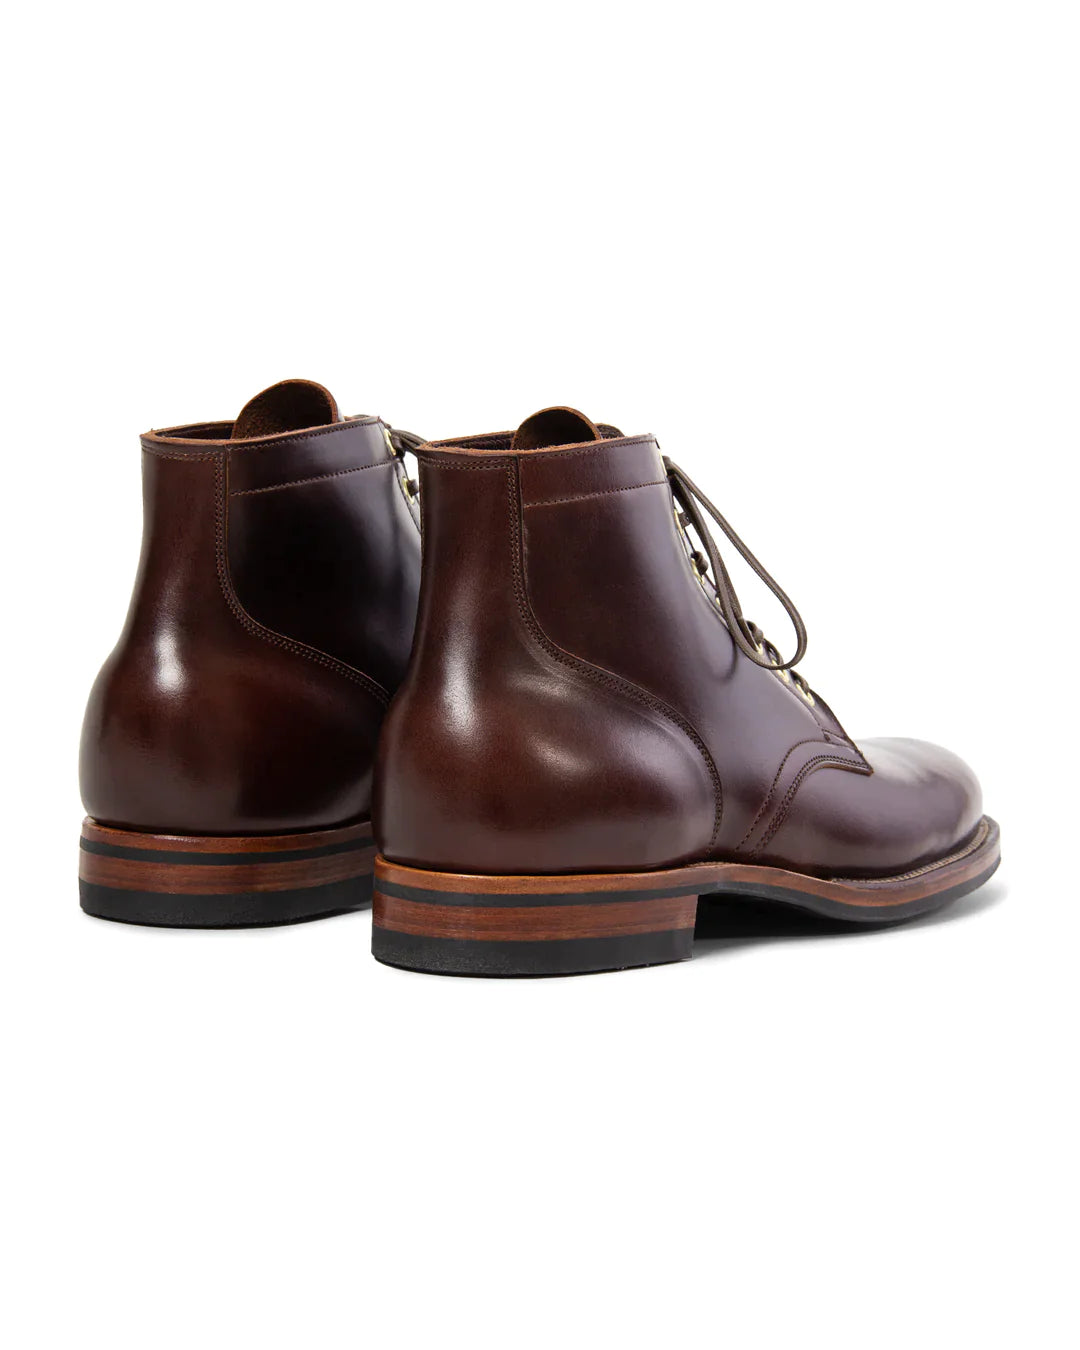 Viberg CORE - Service Boot Plain Toe Brown CXL-Men's Shoes-Yaletown-Vancouver-Surrey-Canada